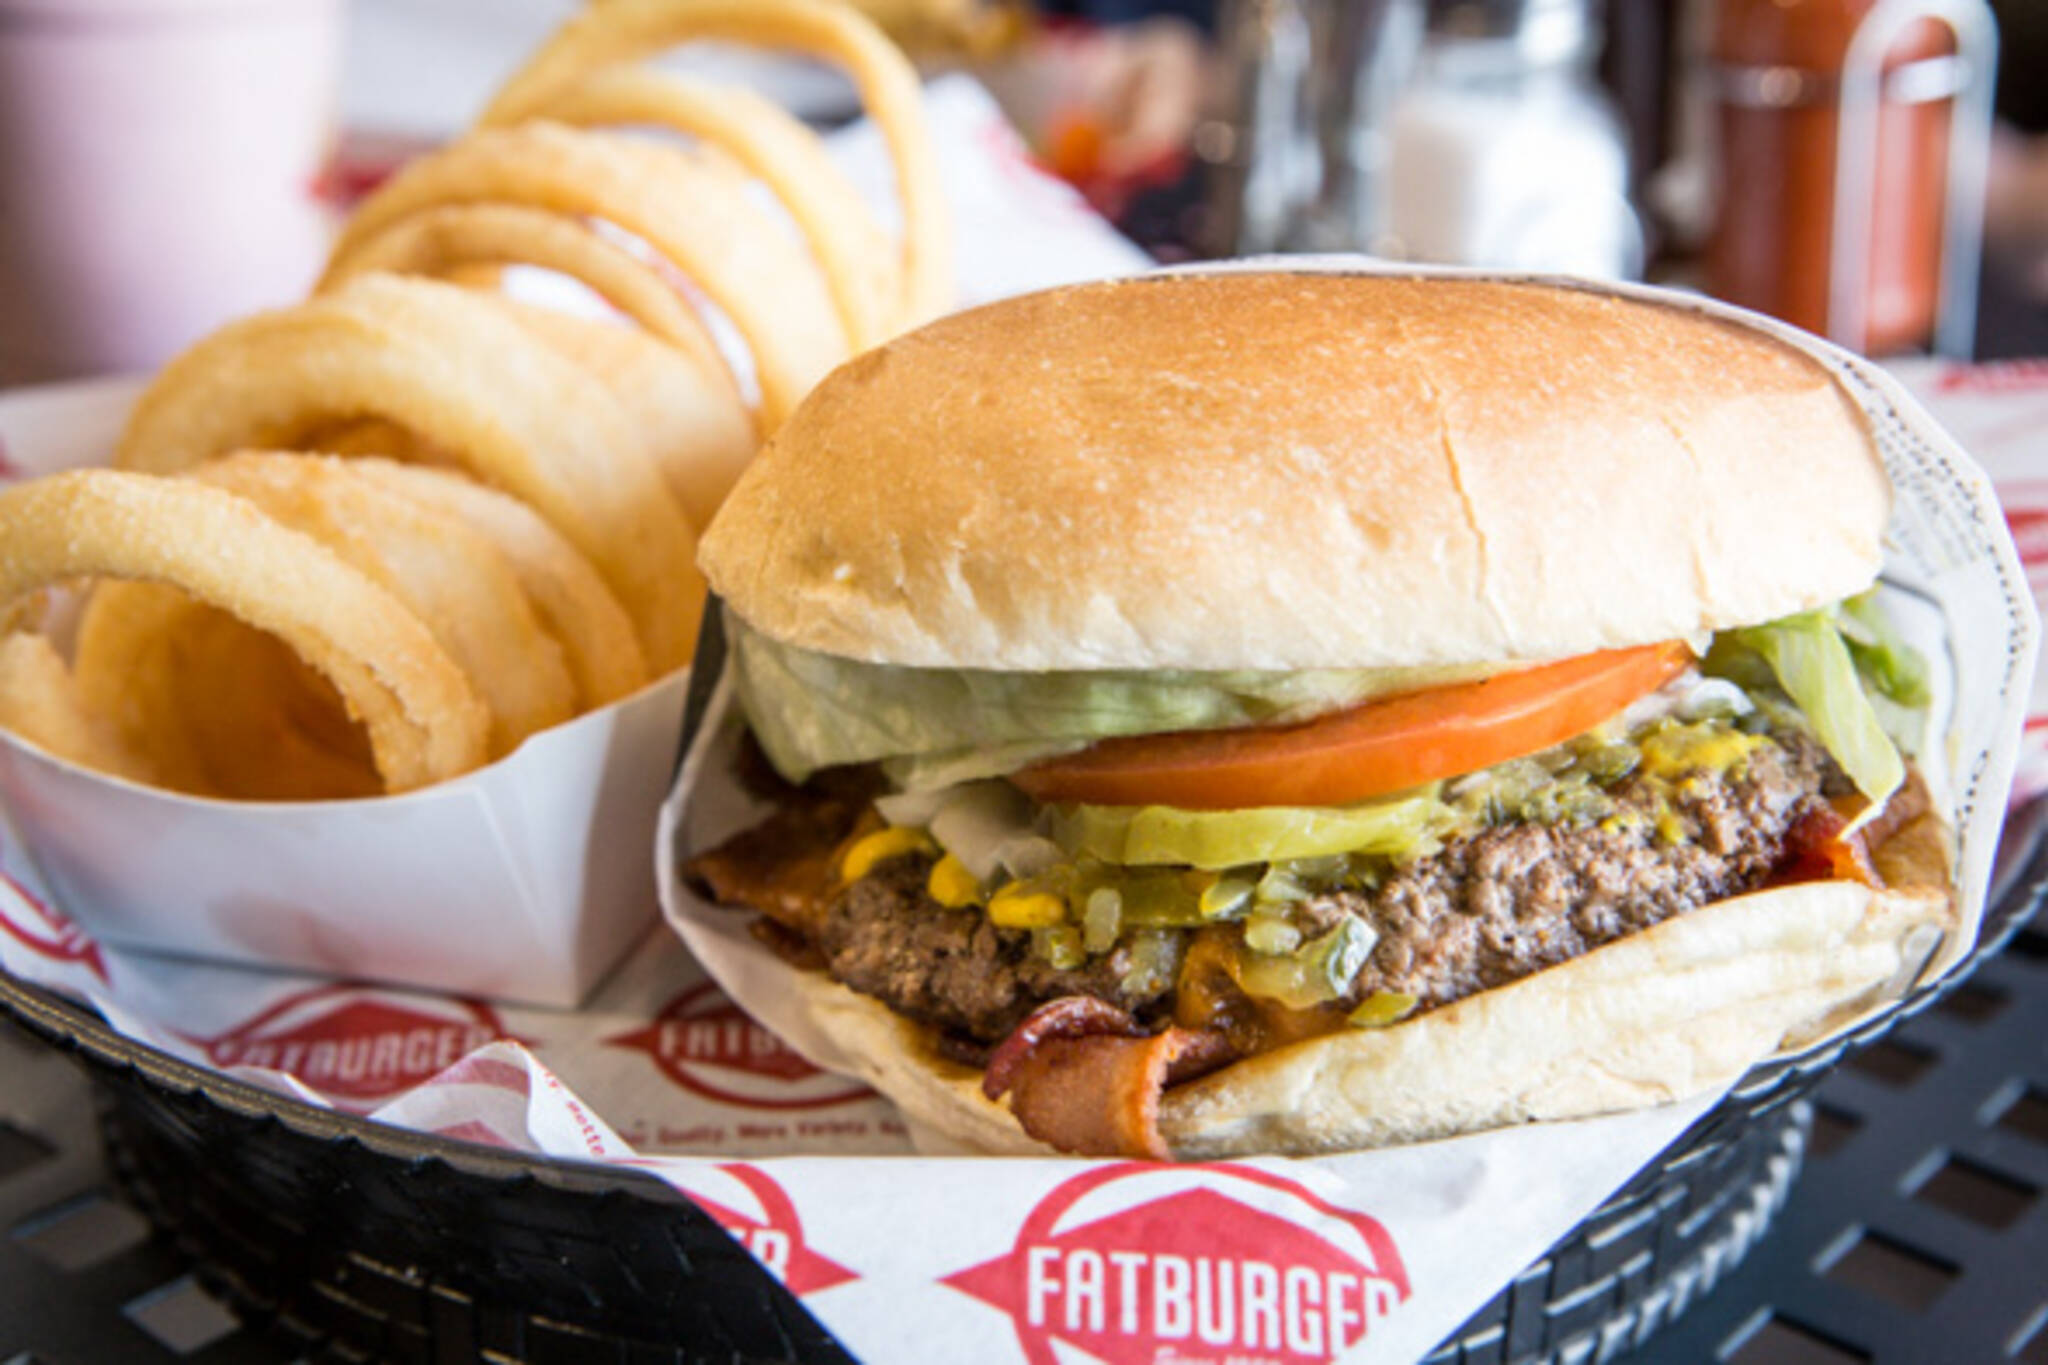 Fatburger Toronto